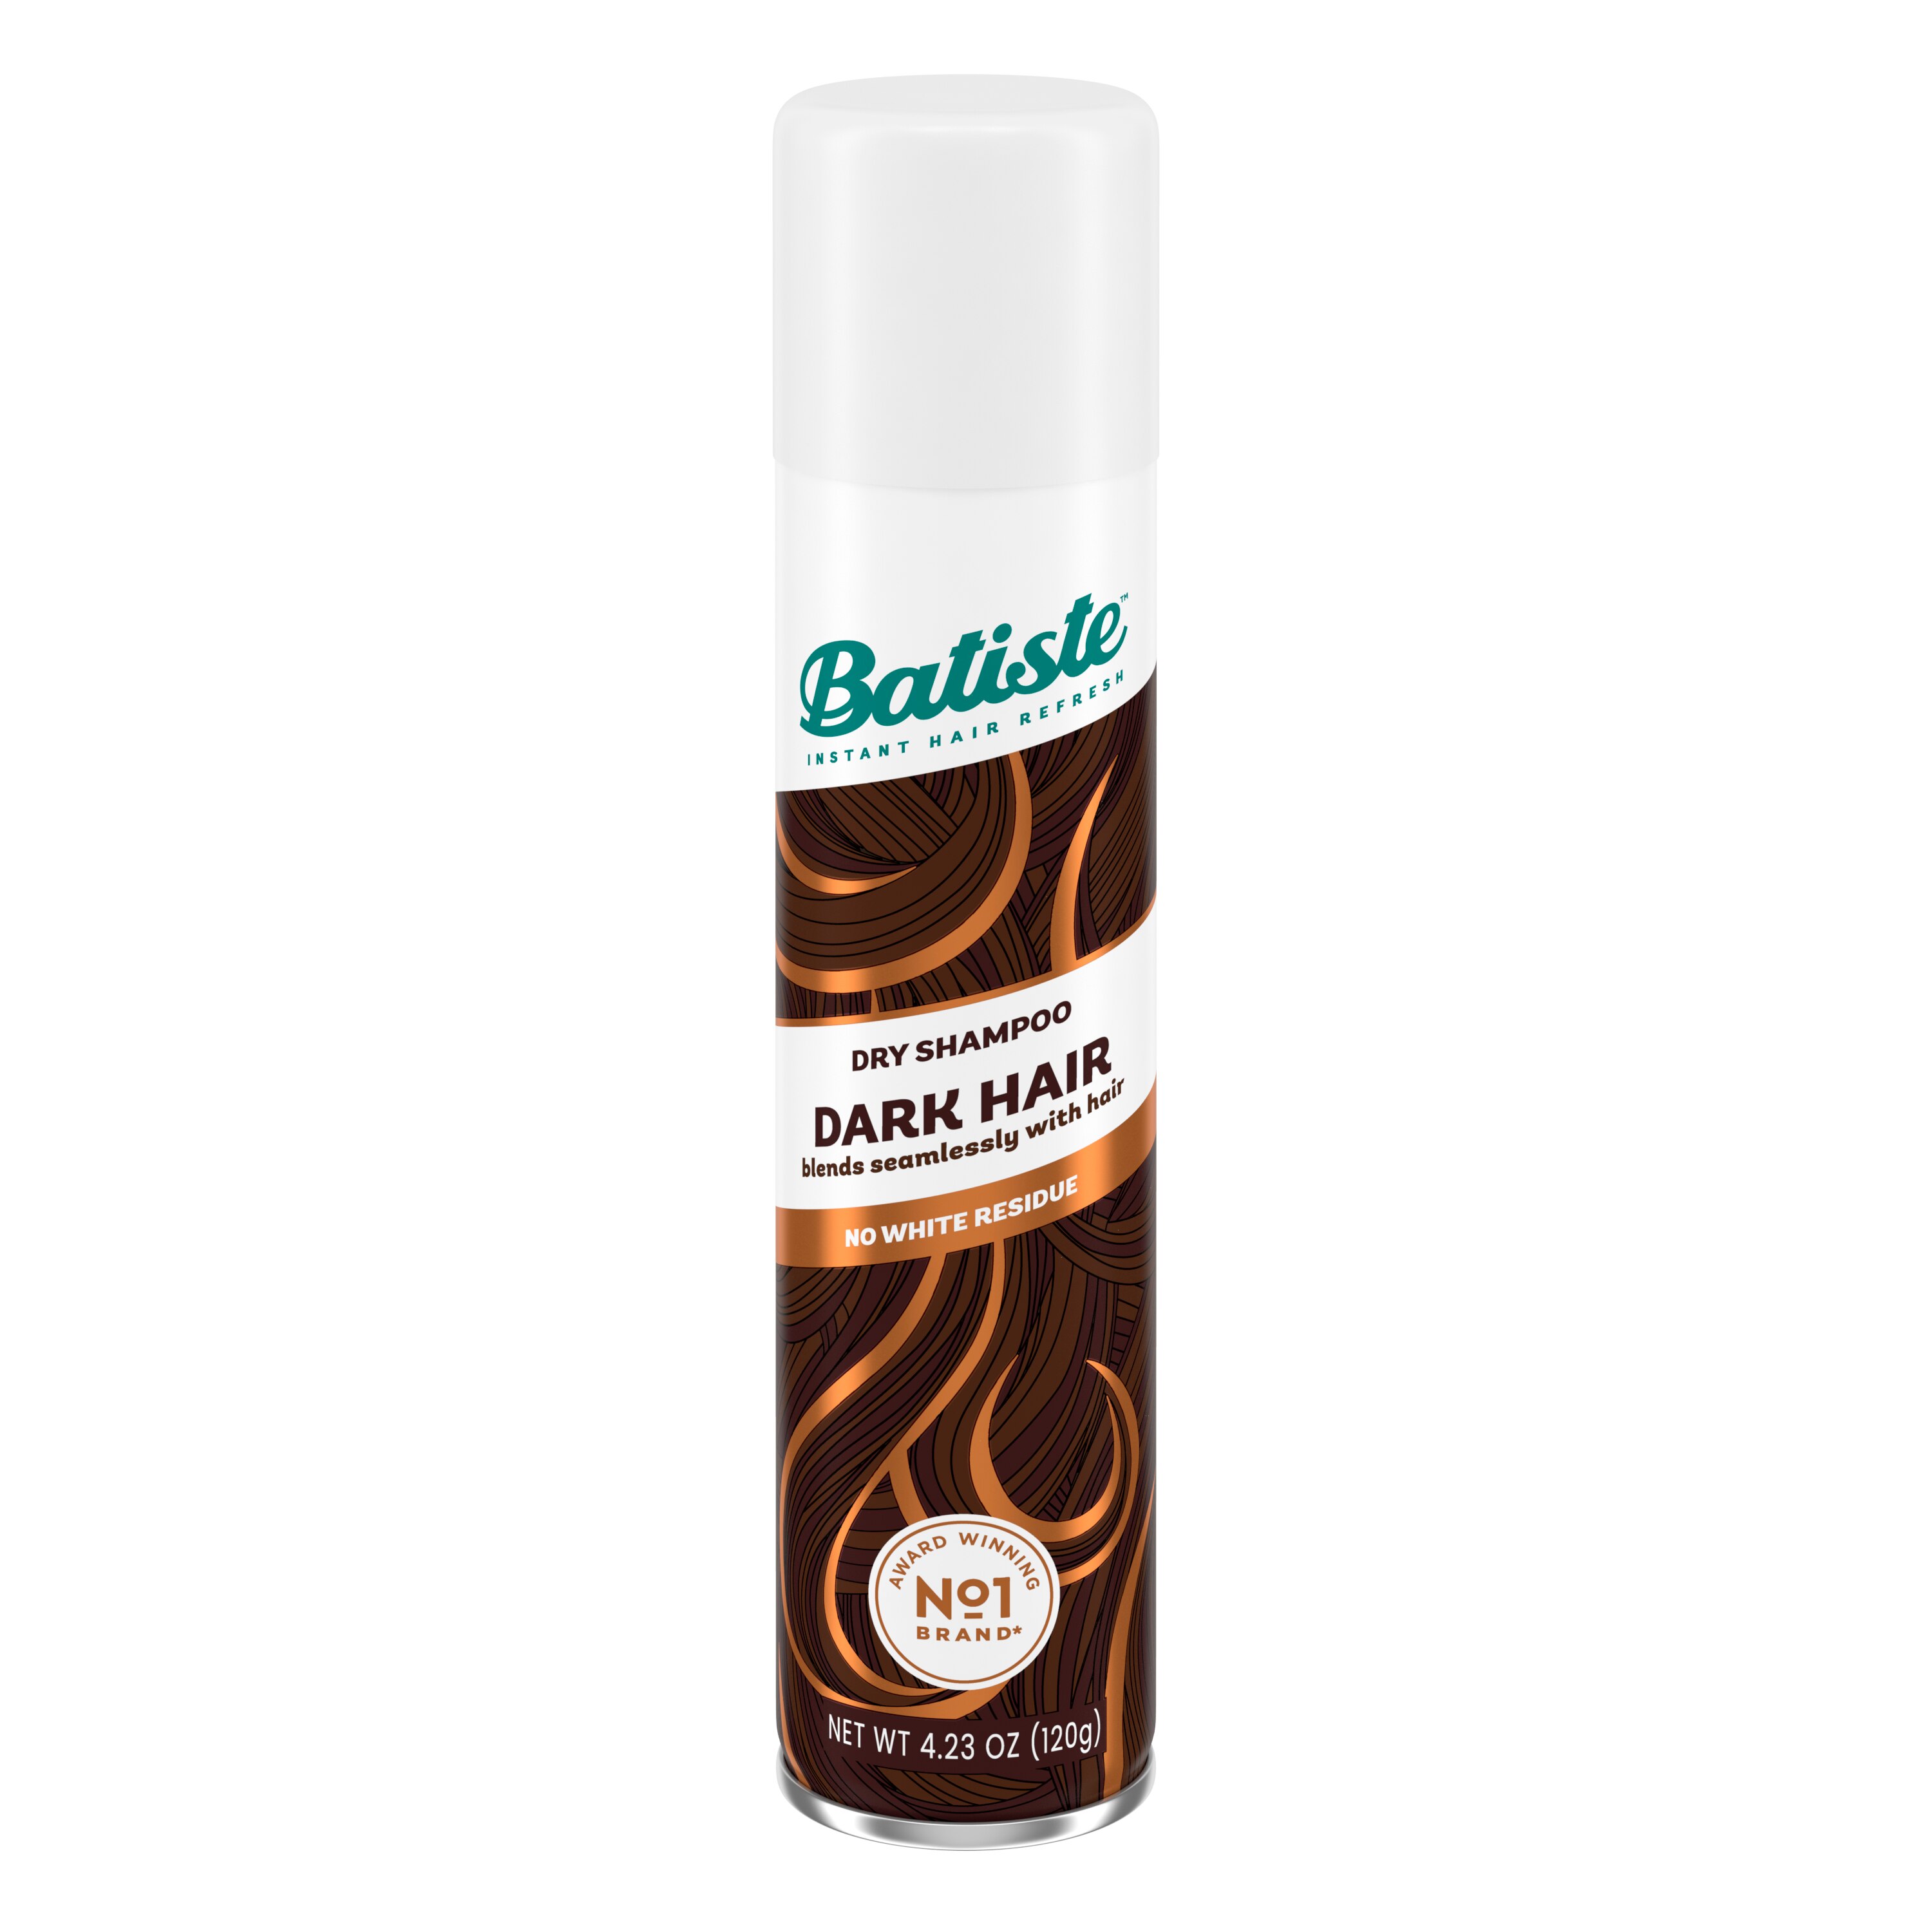 Batiste Dark Hair Dry Shampoo, 4.23 Oz - 3.81 Oz , CVS